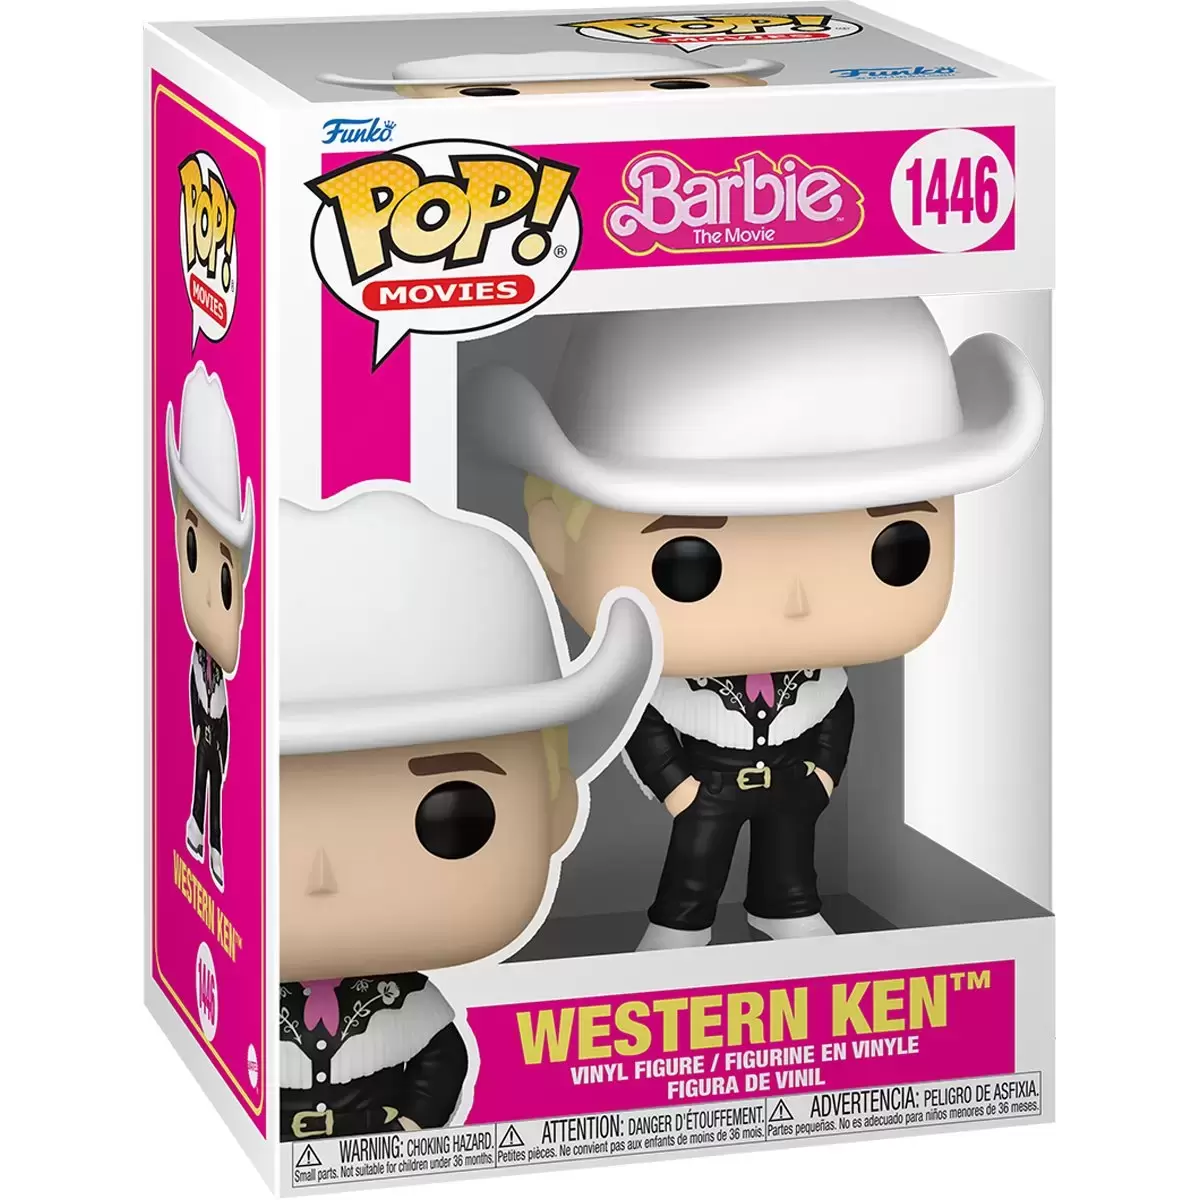 POP! Movies - Barbie The Movie  - Western Ken